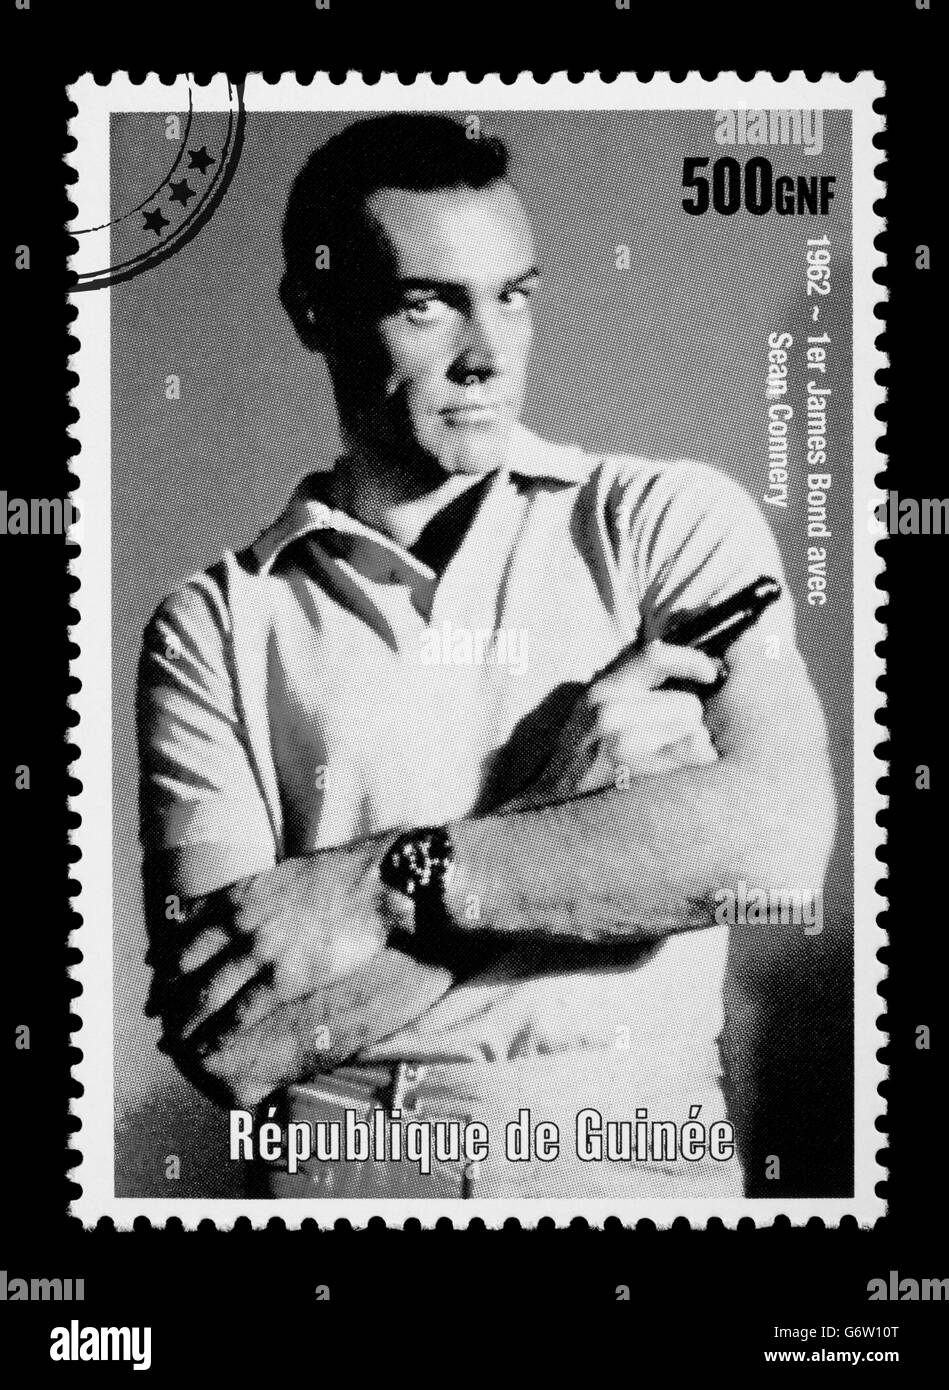 Un timbre-poste imprimé dans la République de Guinée montrant James Bond Banque D'Images